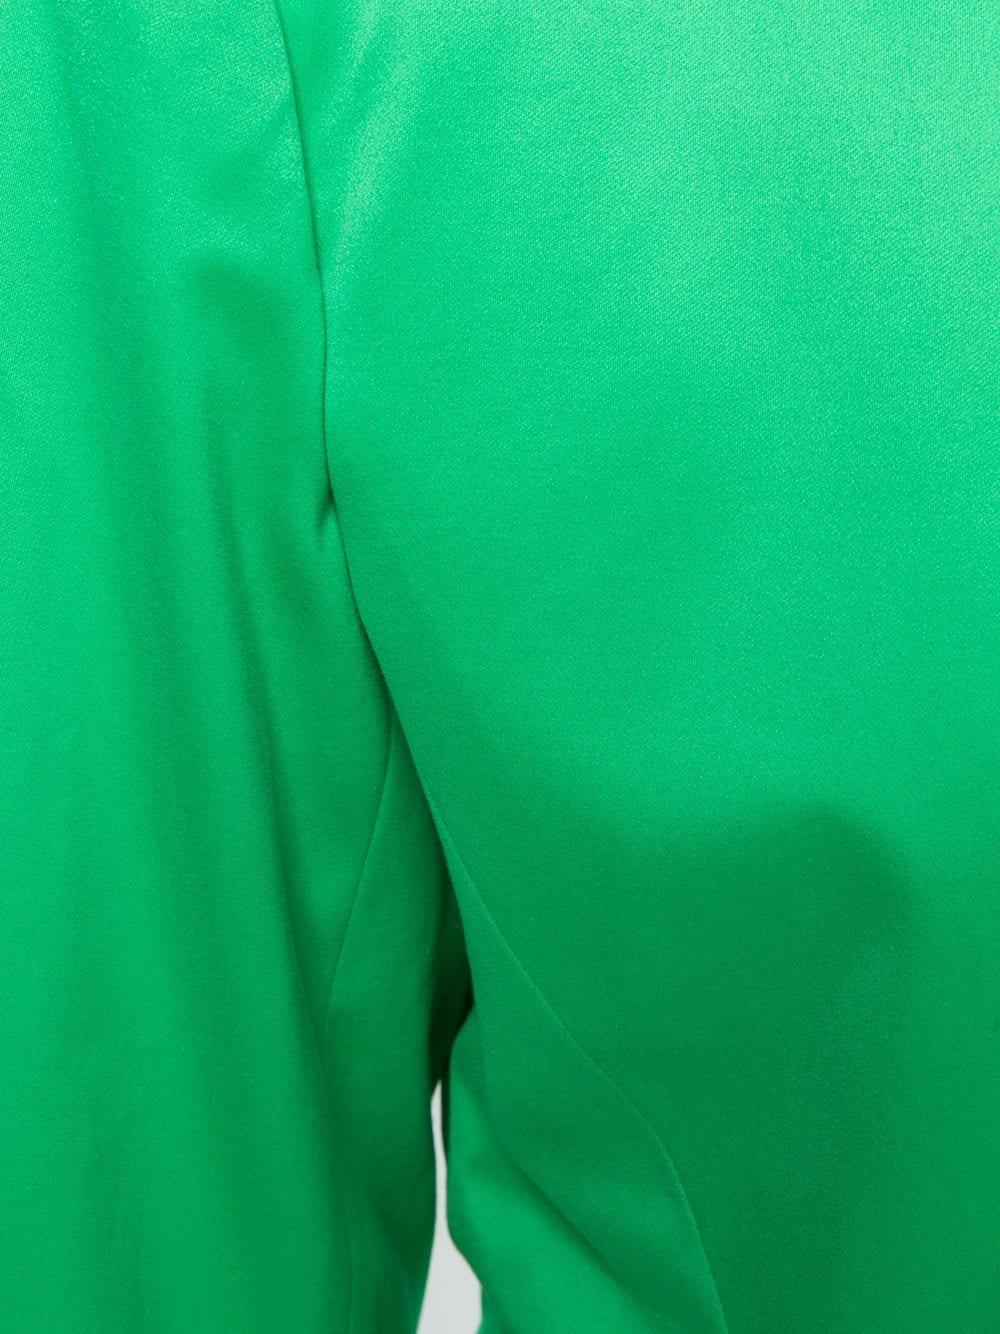 pea green coat